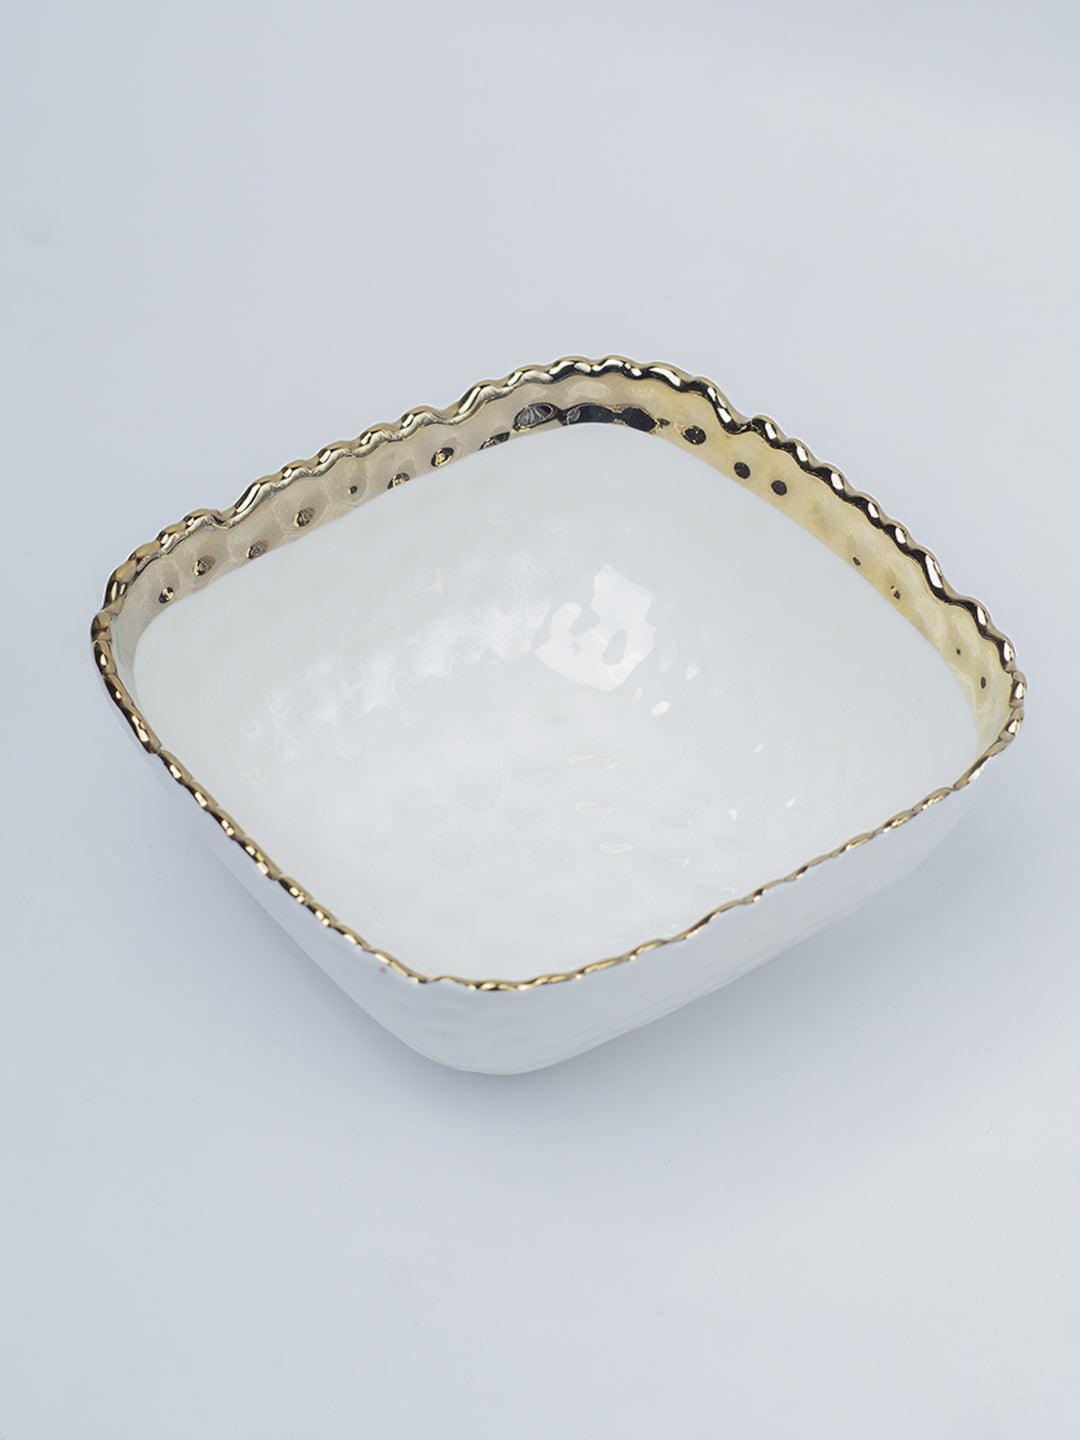 Antique Off White Ceramic Square Serving Dish - 13 x 13 x 6CM - 4